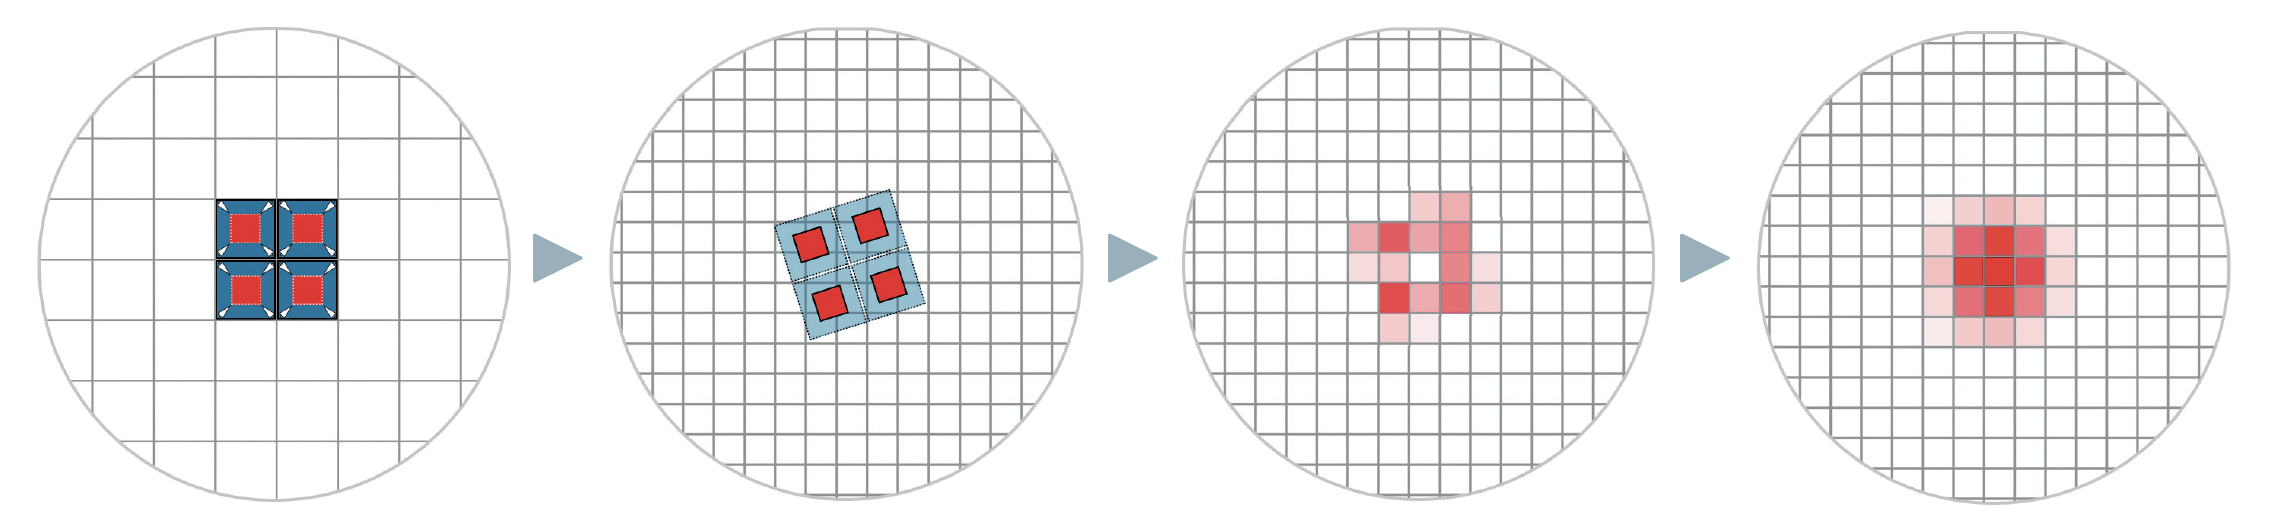 Il principio di funzionamento della tecnica drizzle: nell'immagine a sinistra, una stella è stata catturata esattamente sull'intersezione di quattro pixel e i suoi valori di luminosità sono distribuiti uniformemente tra i pixel. La stella appare quindi pixelata e il suo profilo reale non viene riprodotto. La griglia originale dei pixel dell'immagine (blu) viene ridotta (rosso) e proiettata su una nuova griglia (seconda immagine), 2 volte più fine. Con una sola immagine, in alcuni punti si verificano naturalmente dei vuoti, come si può vedere nella redistribuzione dei valori risultante nella terza immagine. Ecco perché sono necessarie molte immagini con piccoli spostamenti variabili. Dopo averne calcolato la media, il profilo della stella è ora meglio rappresentato nel caso ideale (immagine di destra). M. Weigand